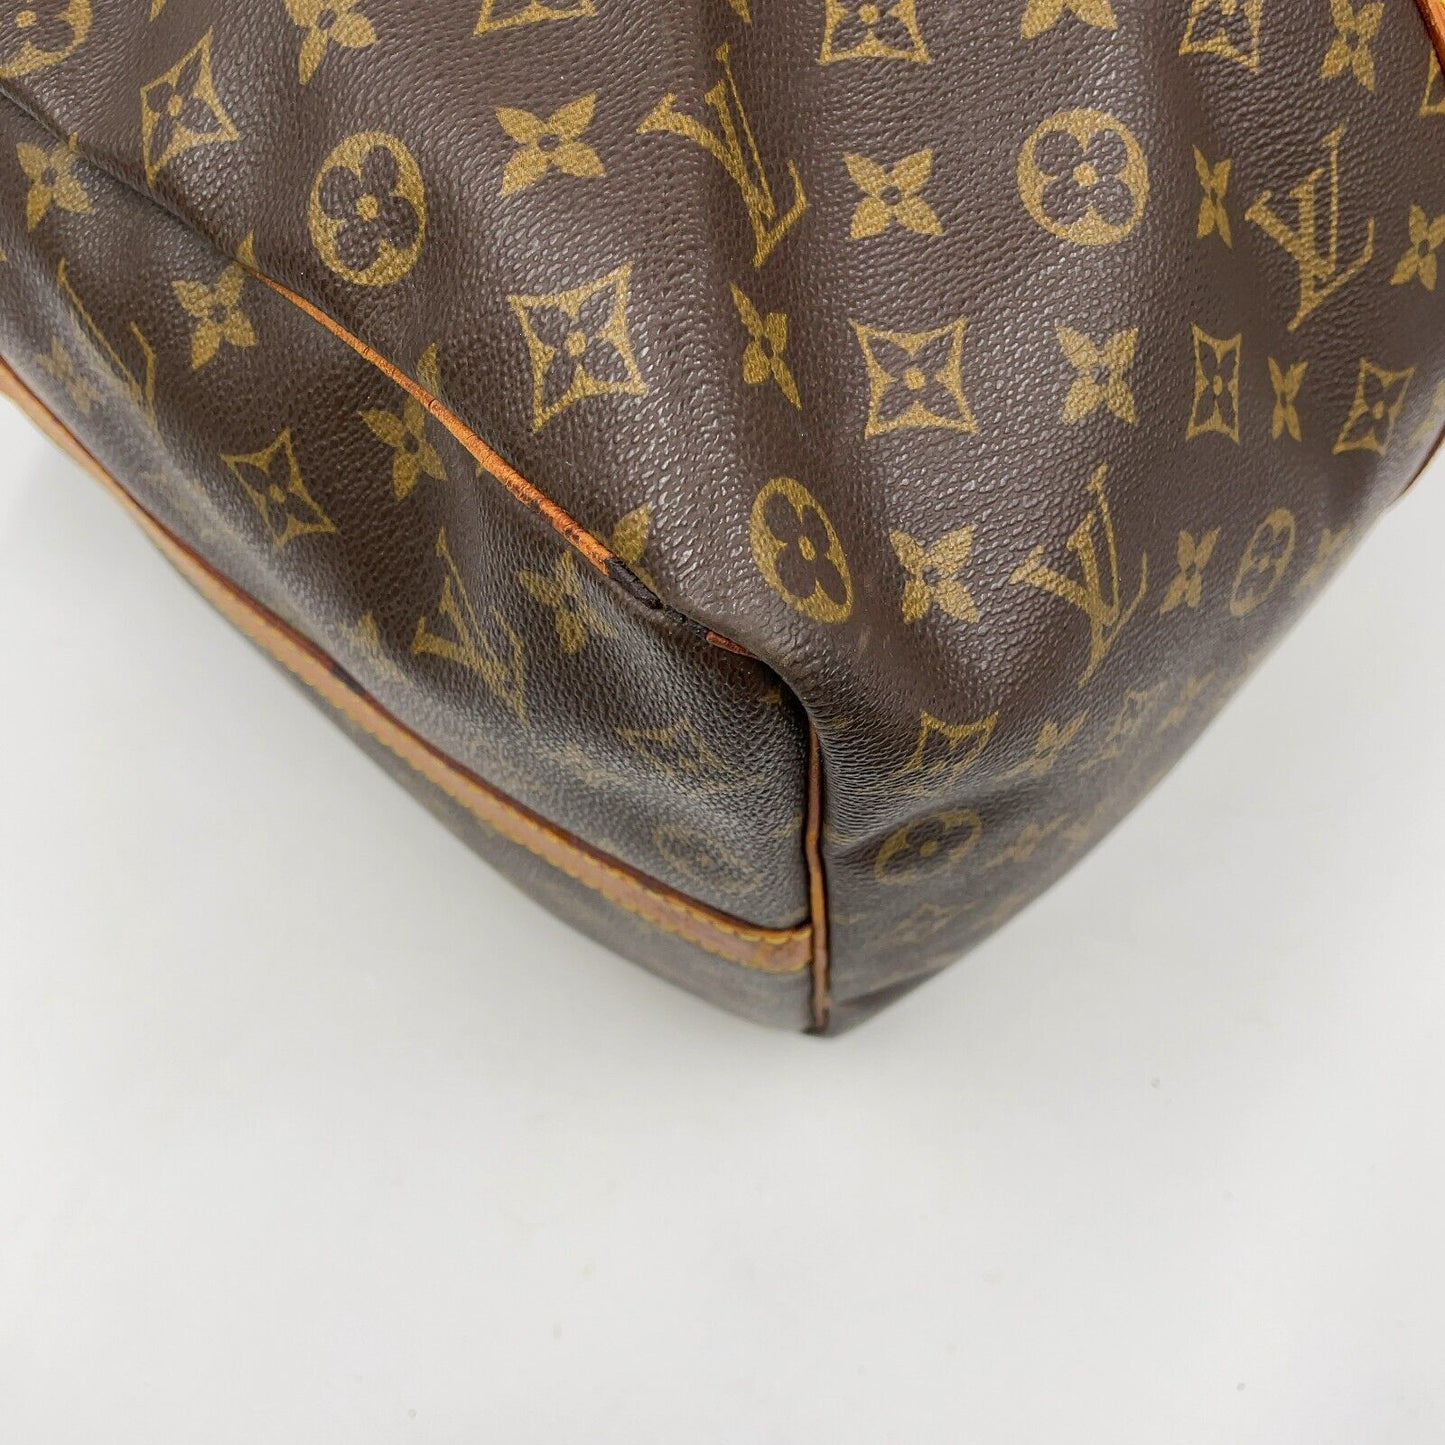 Original/Auth Louis Vuitton - Keepall Bandouliere 50 - Klassisch - Monogramm